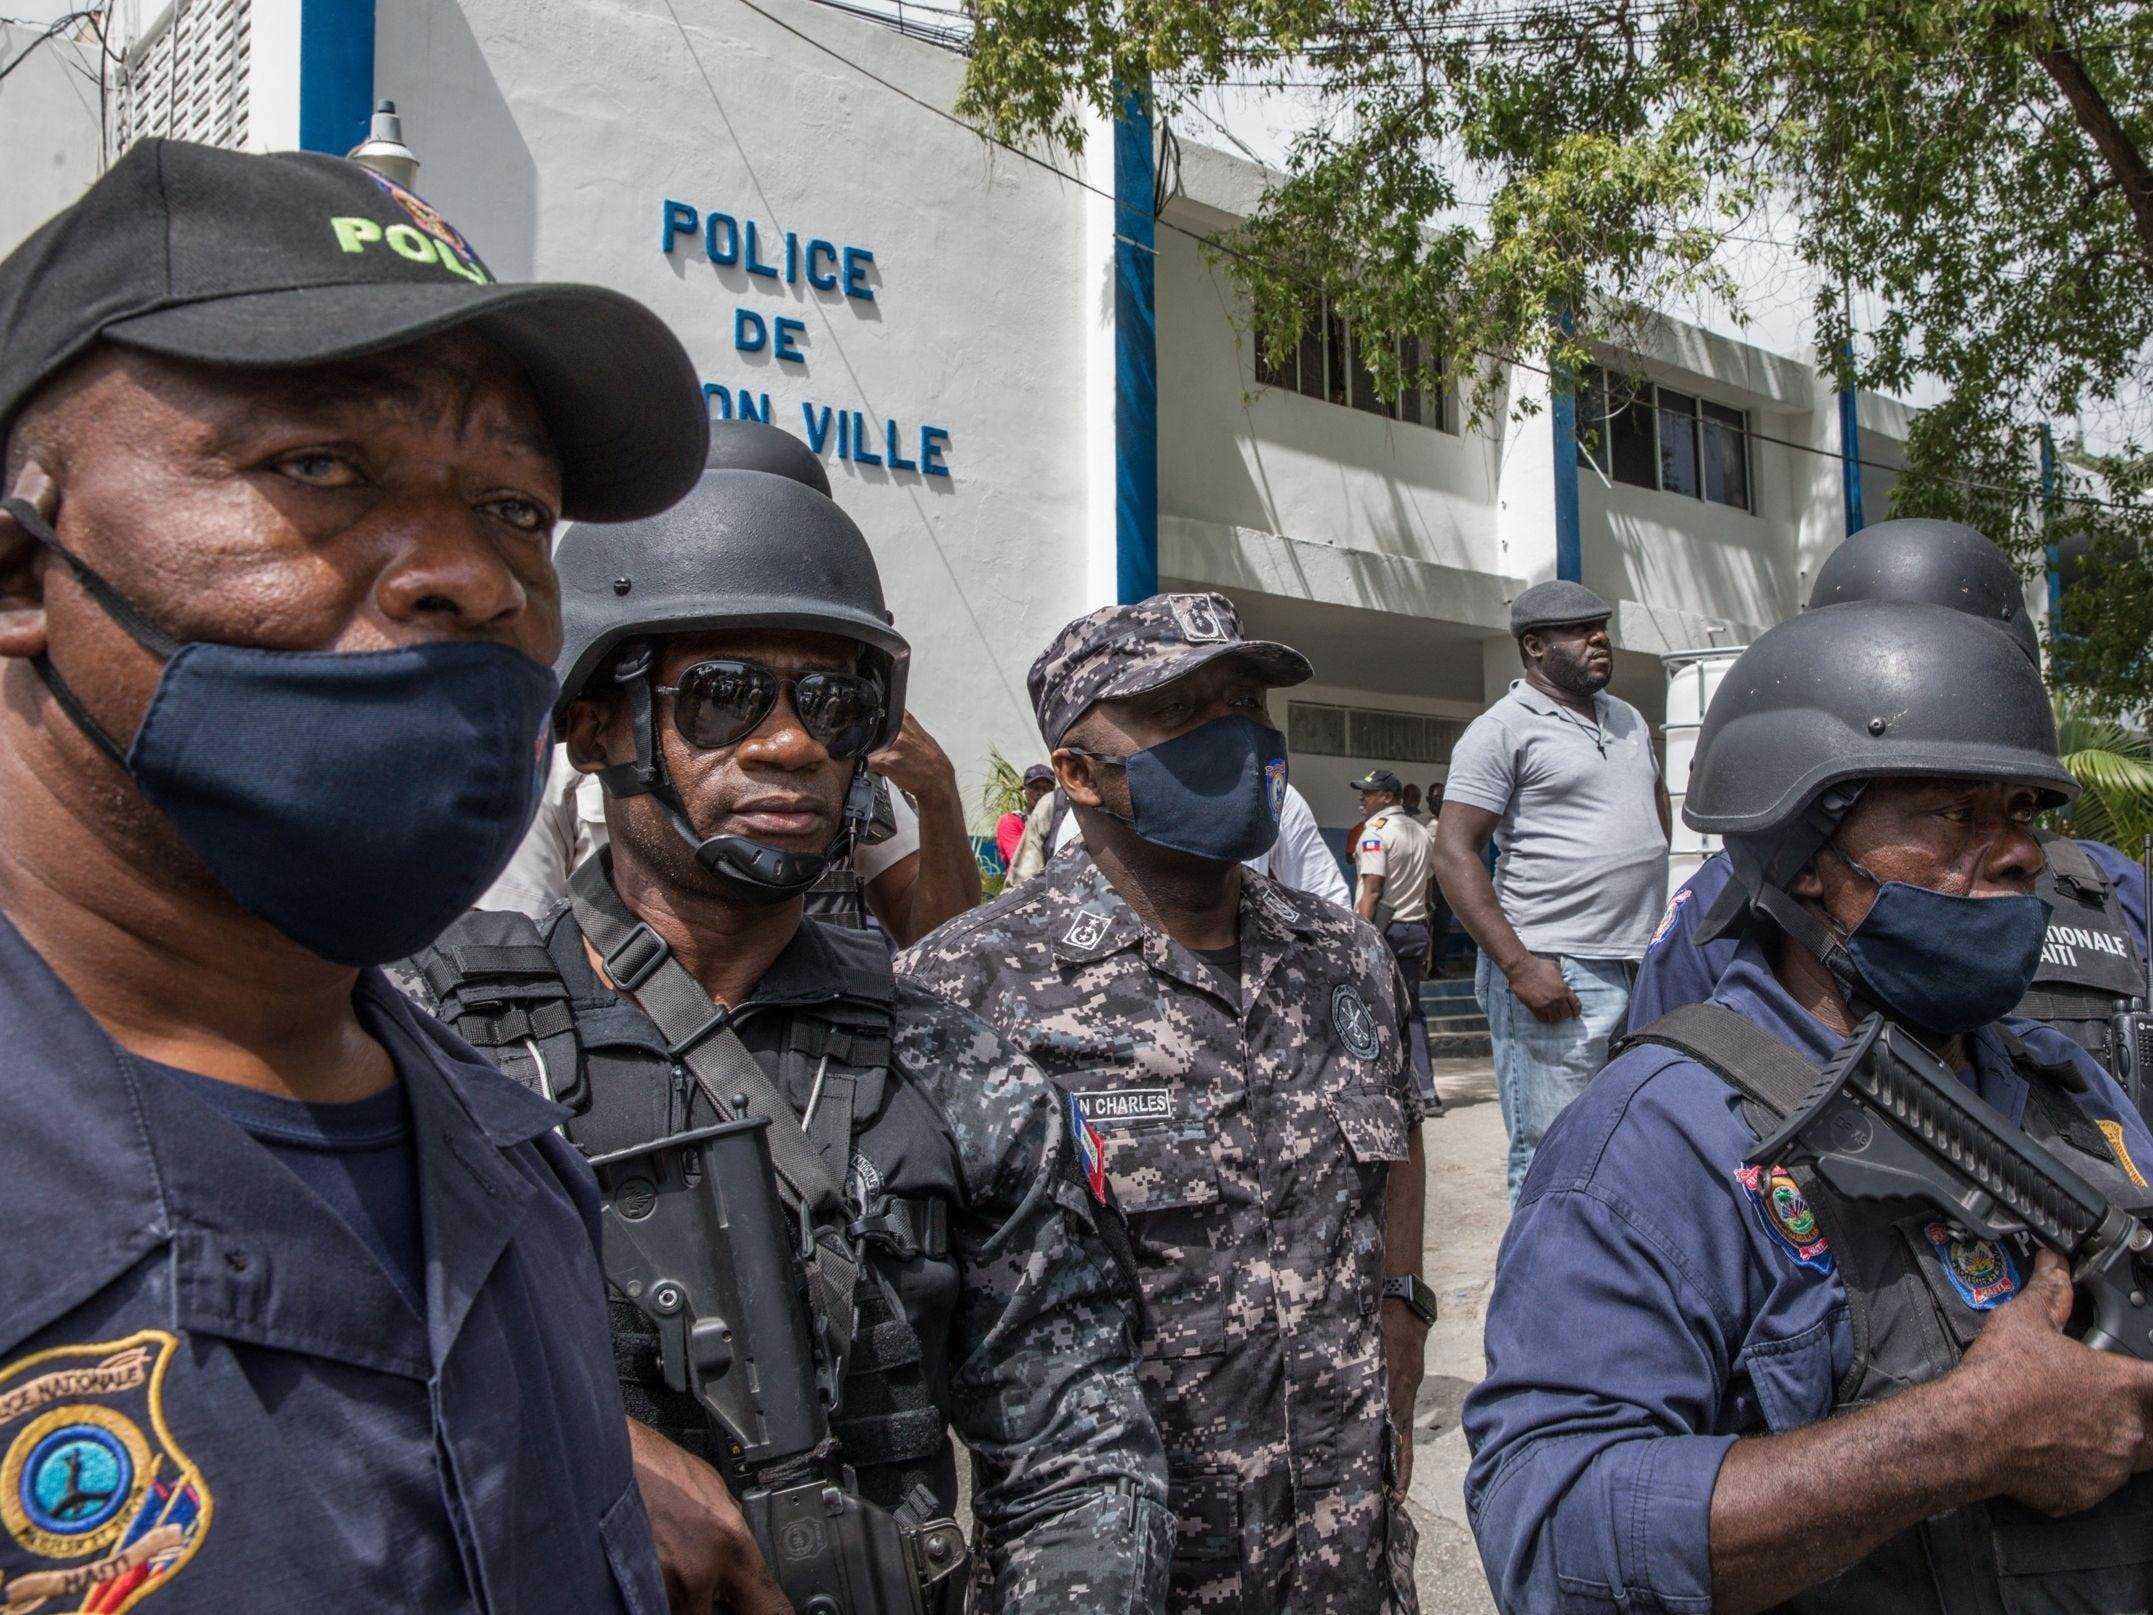 Leon Charles, Leiter der Polizei Nationale von Haiti (C), schaut zu, wie die Menge die Polizeistation Petionville umgibt.